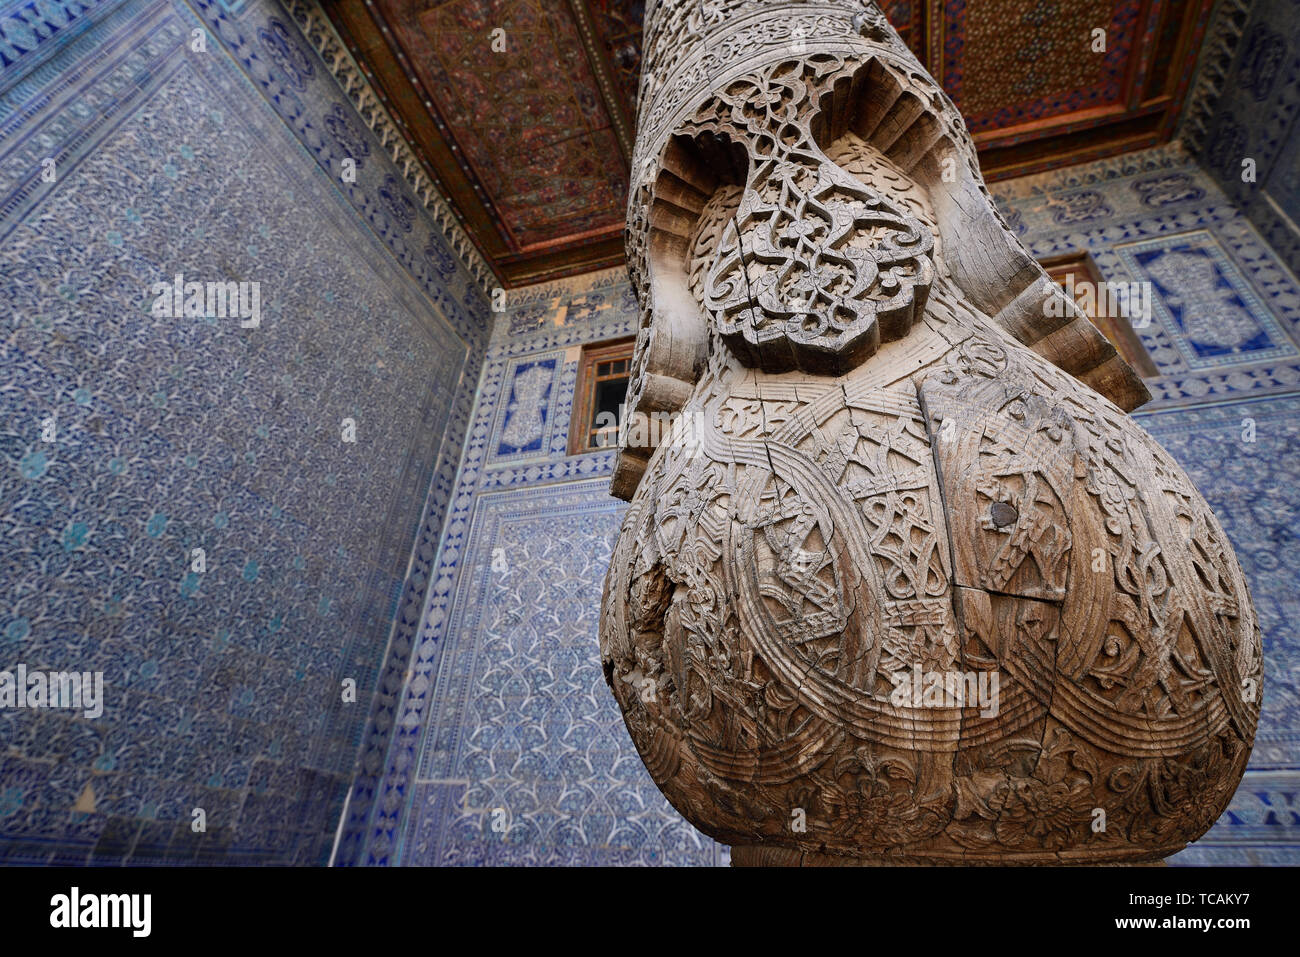 TOSH-HOVLI, KHIVA, Uzbekistan - 02 Maggio 2019: più sontuosa decorazione interna del Tosh-Hovli palace di Khiva nella Via della Seta Foto Stock